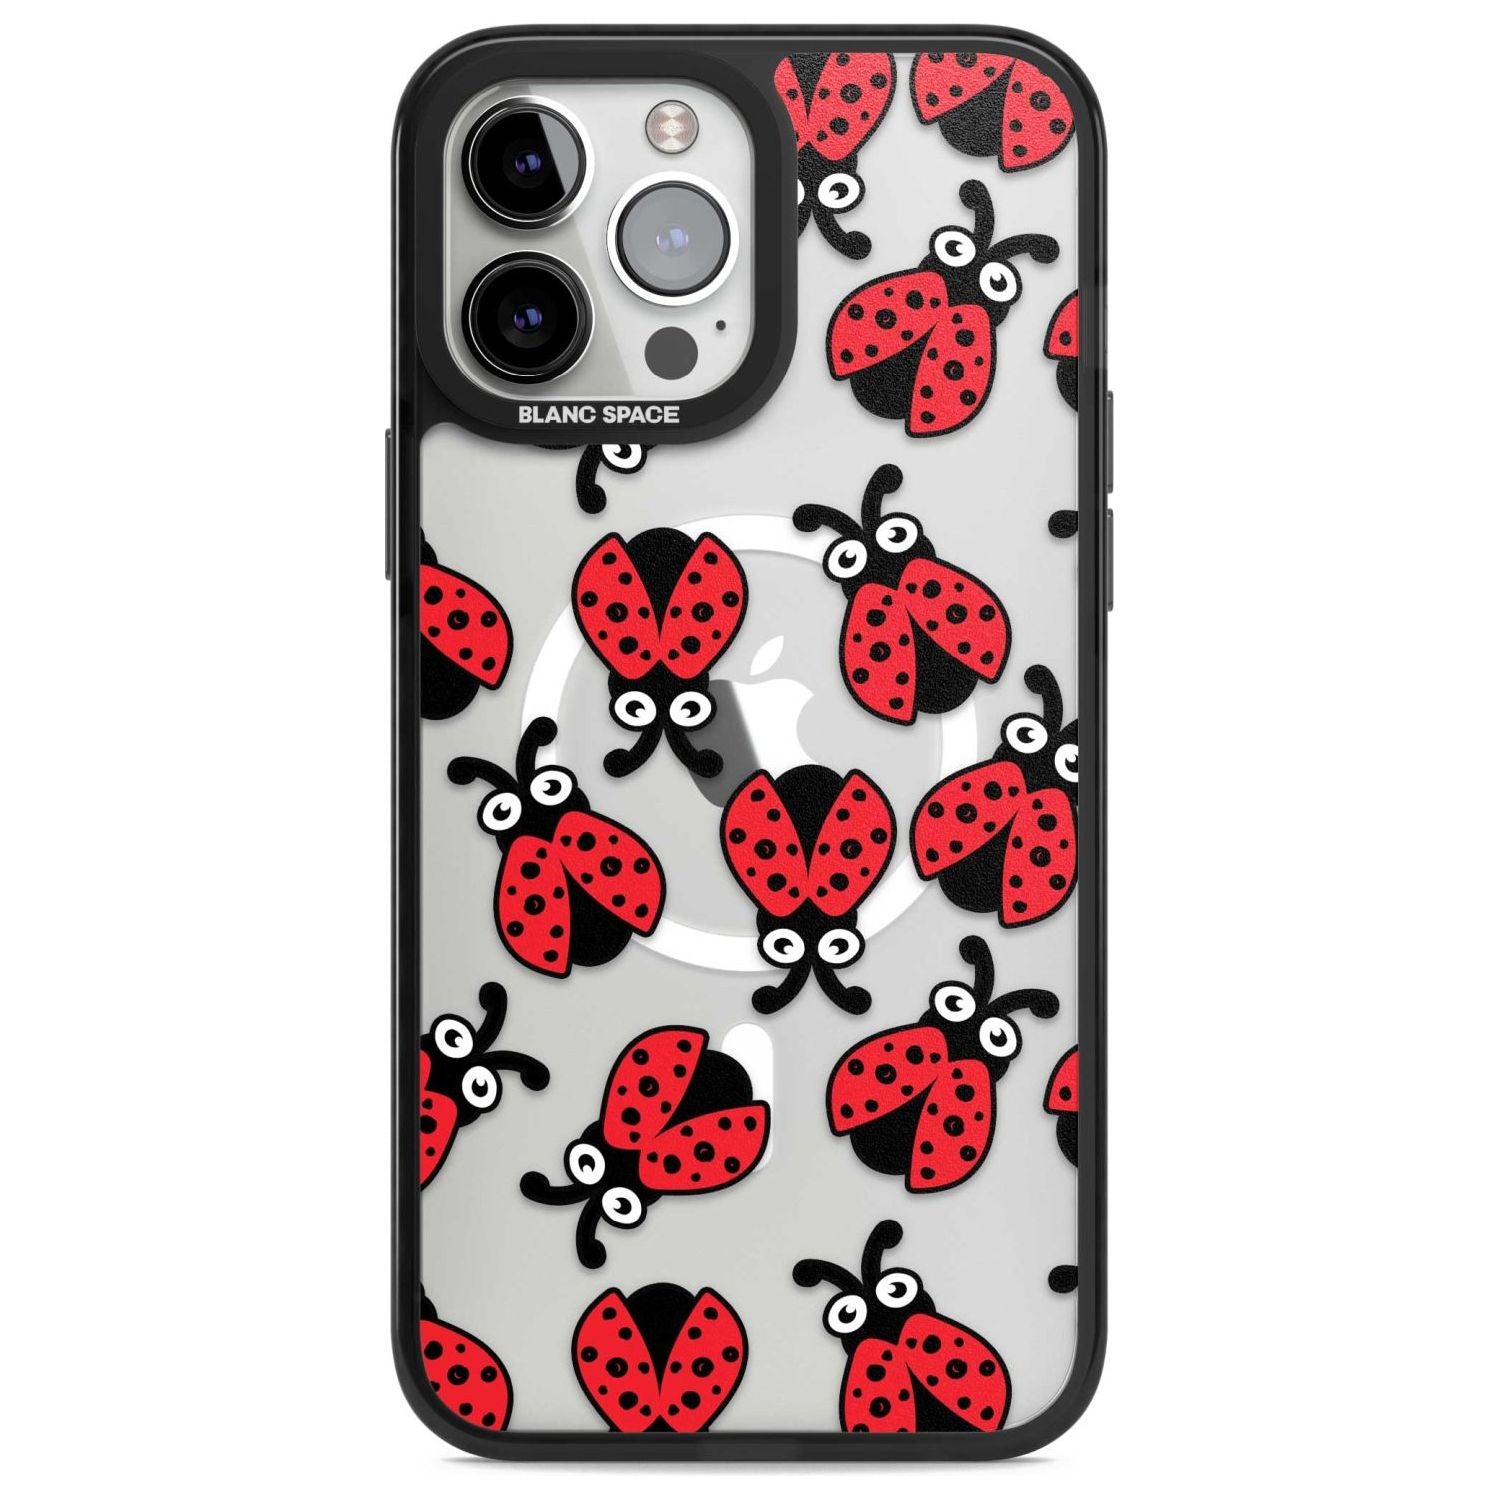 Ladybug Pattern Phone Case iPhone 13 Pro Max / Magsafe Black Impact Case Blanc Space